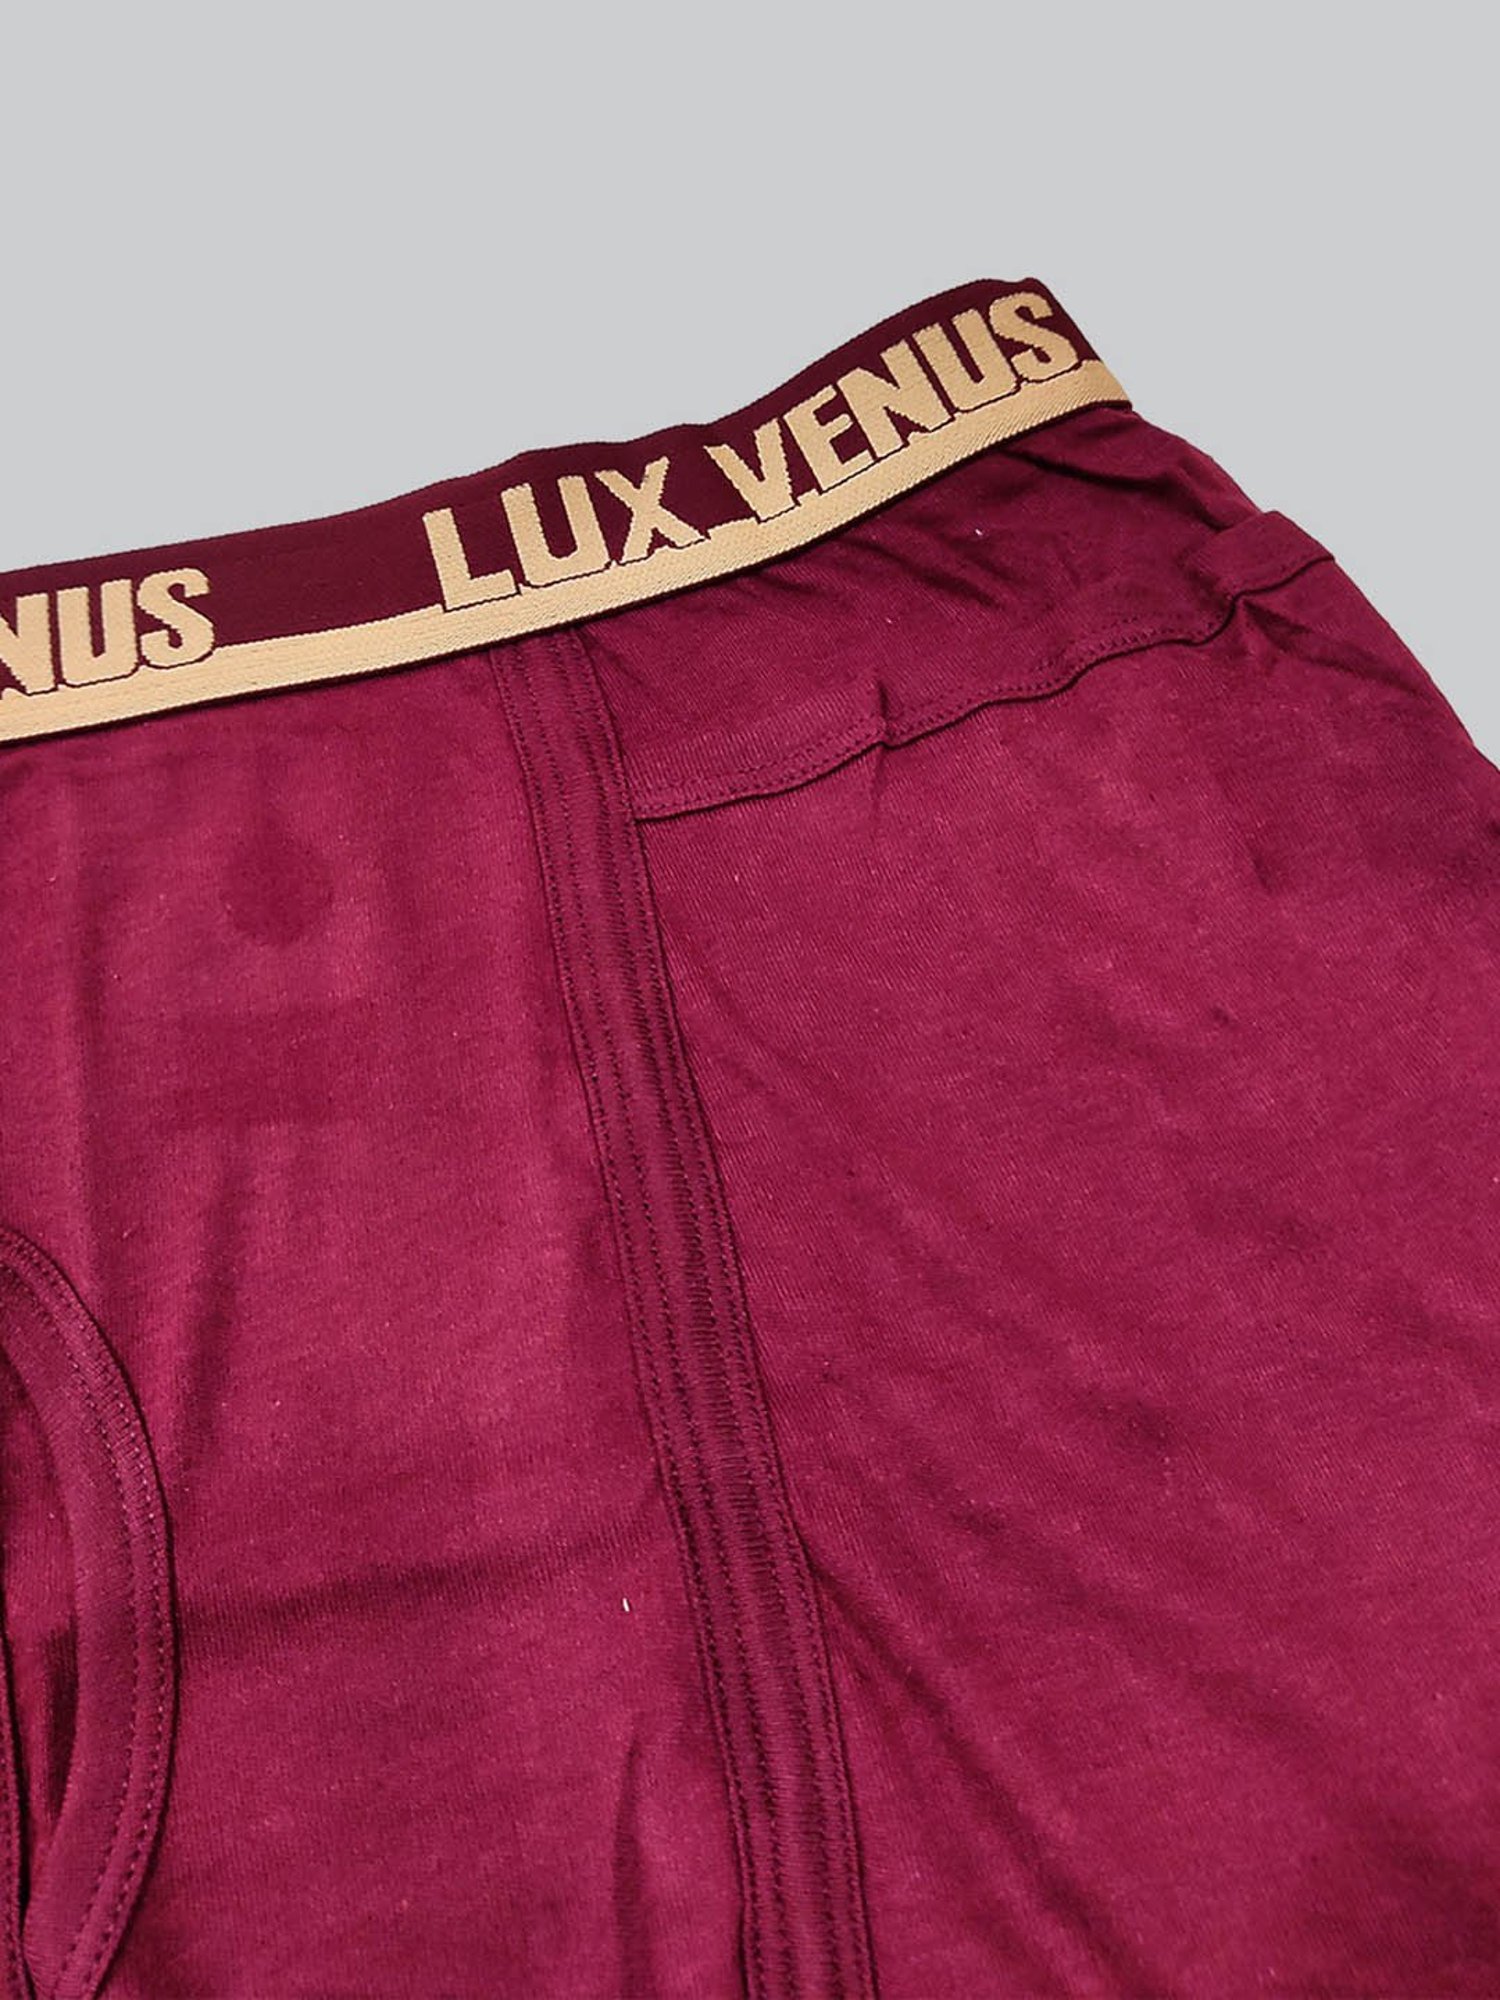 Buy LUX VENUS Men Pack Of 4 Trunks VENUS_POCKET_DRW_AST - Trunk